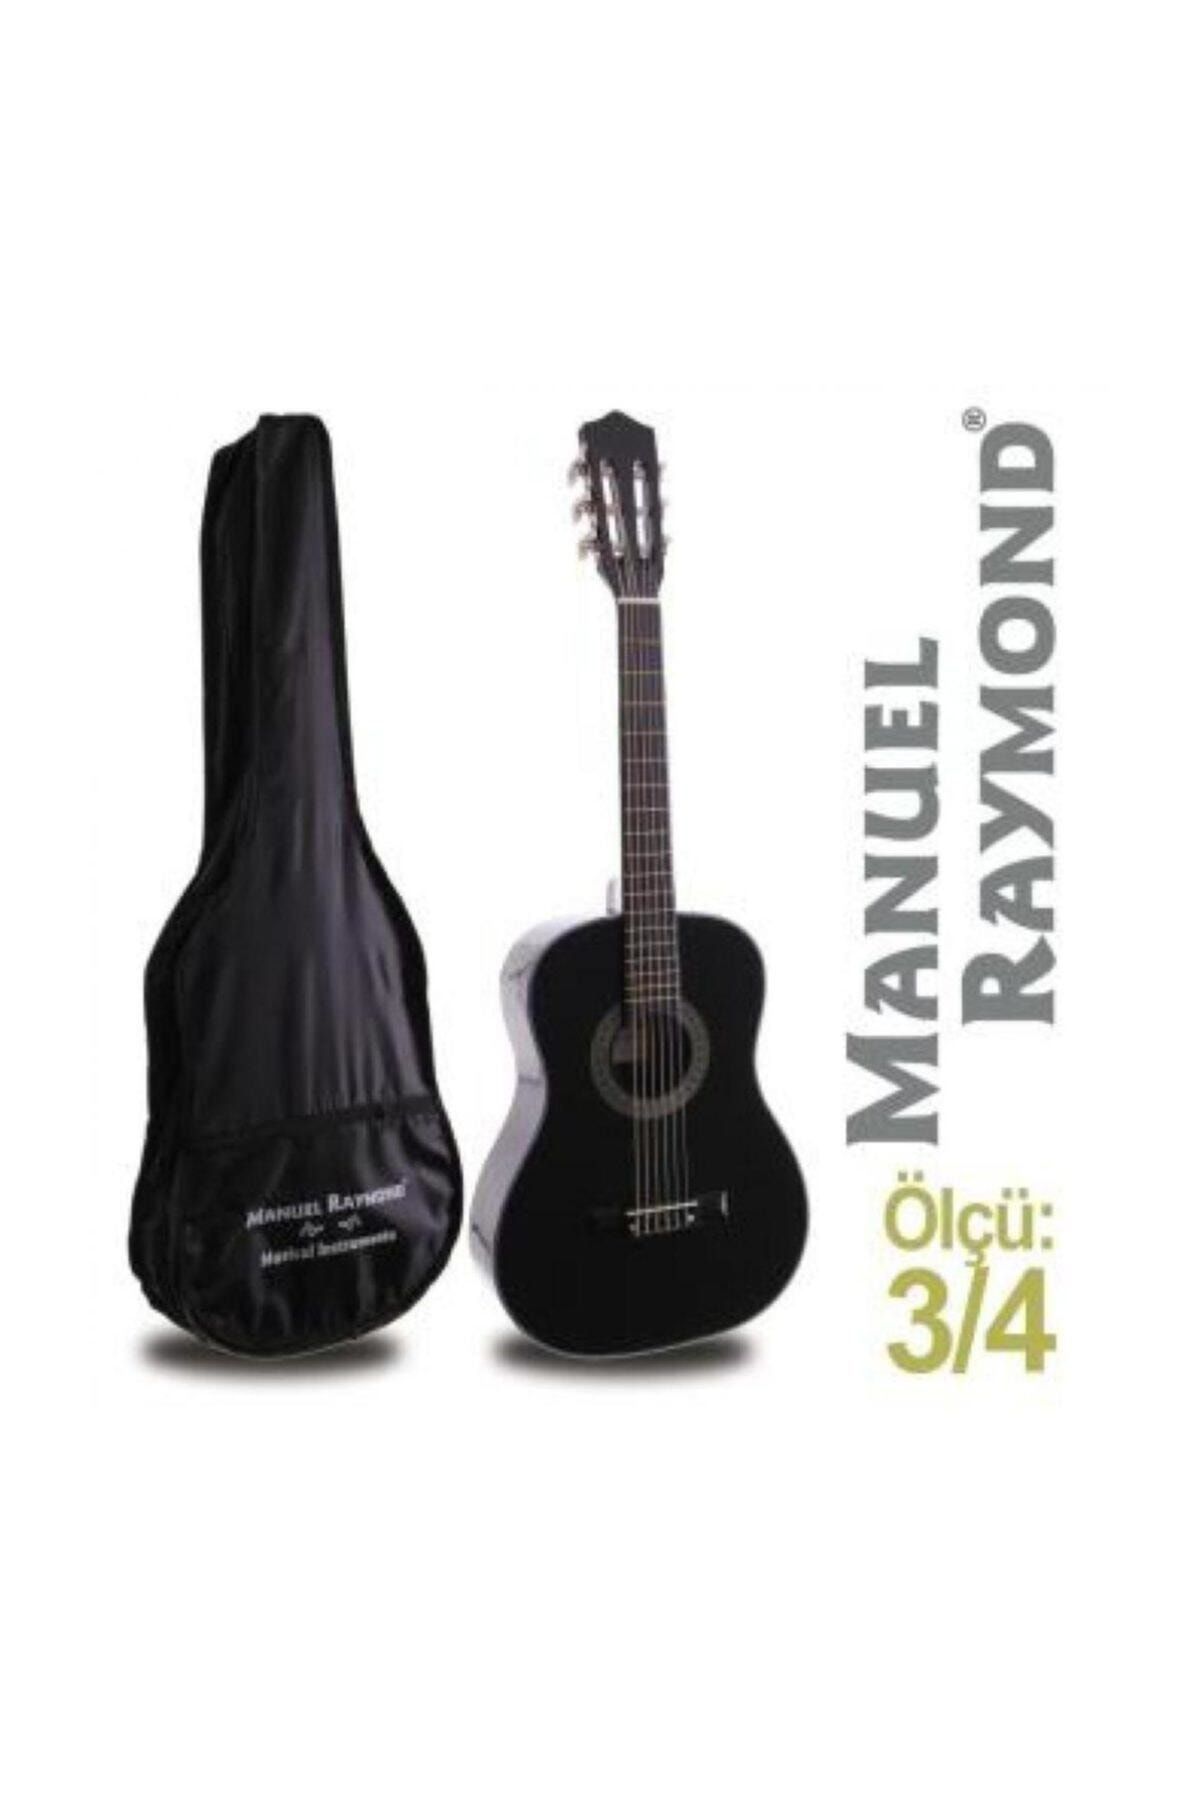 Manuel Raymond Gitar Junior  Mrc87bk (kılıf Hediye)